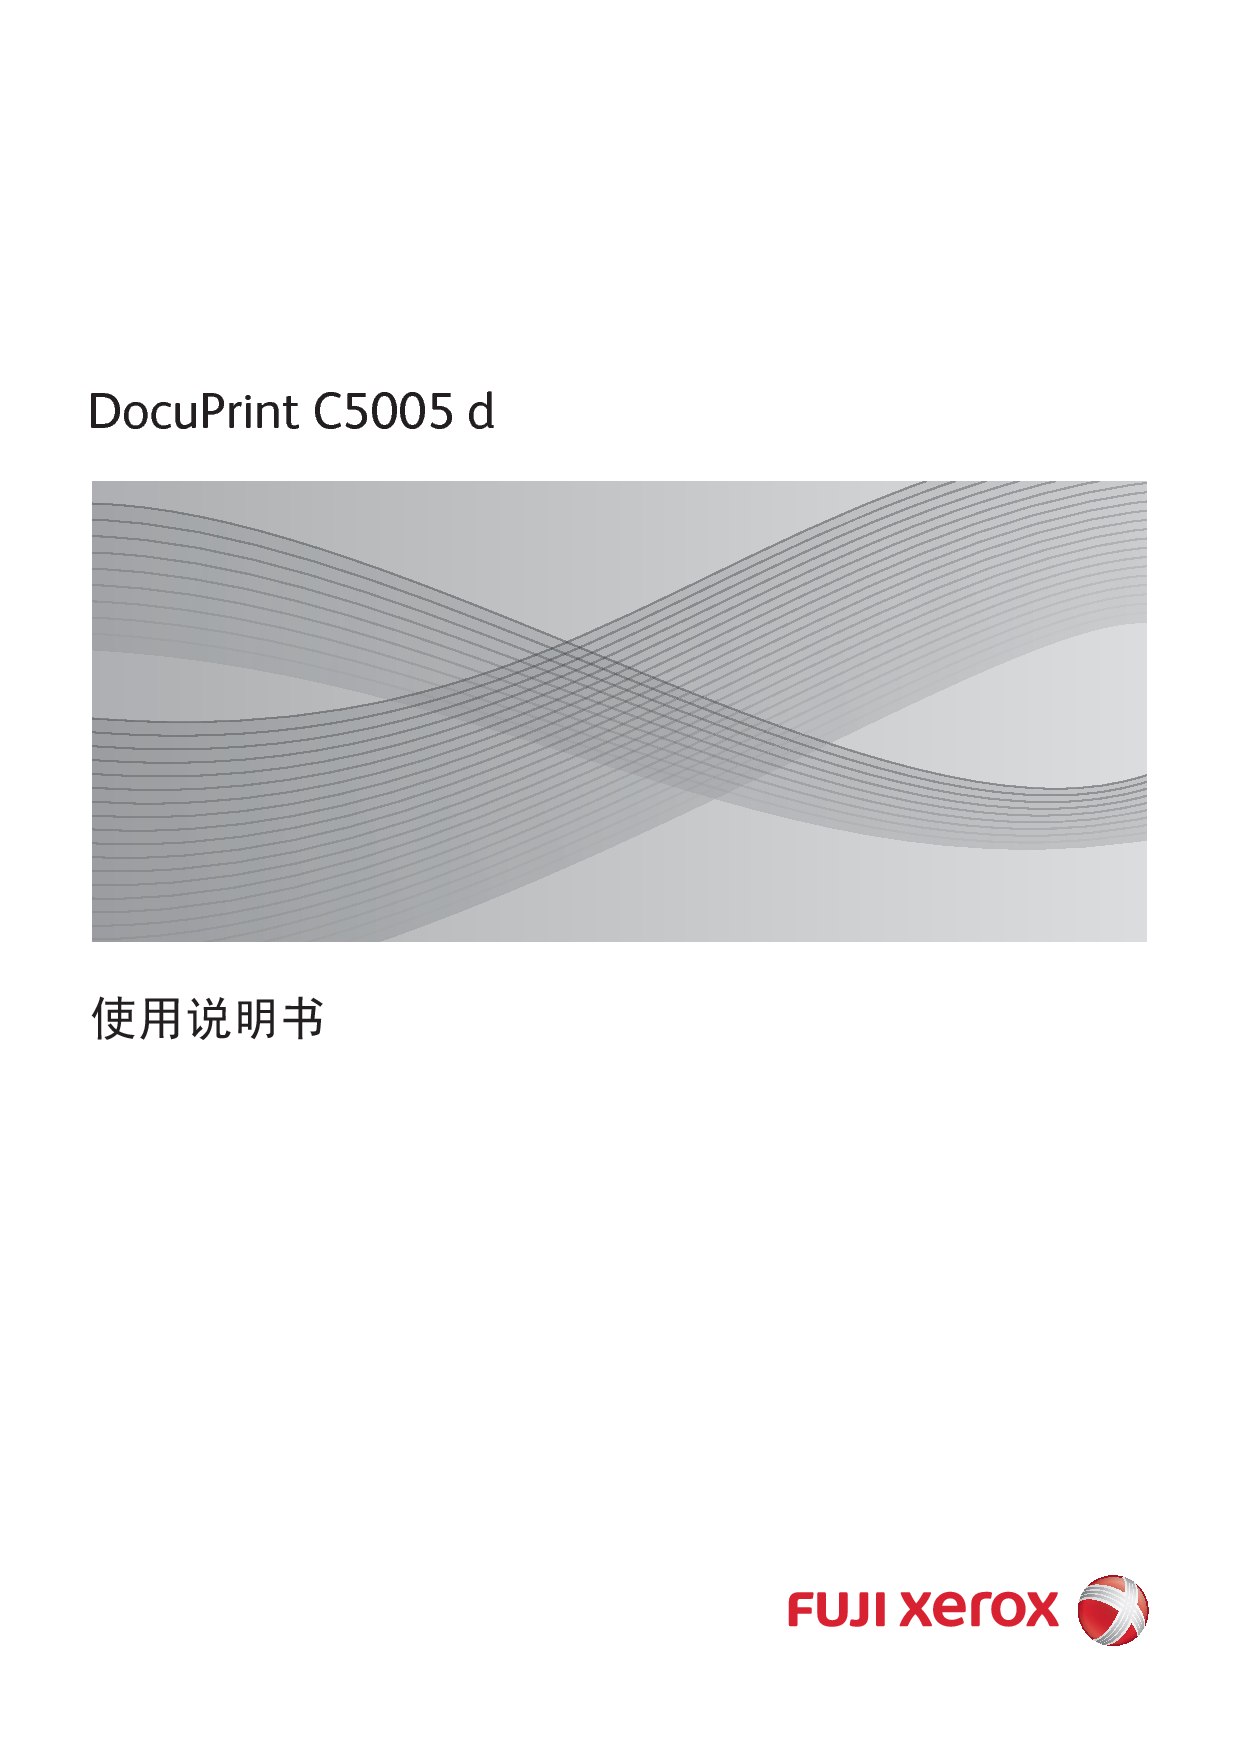 富士施乐 Fuji Xerox DocuPrint C5005 d 使用说明书 封面